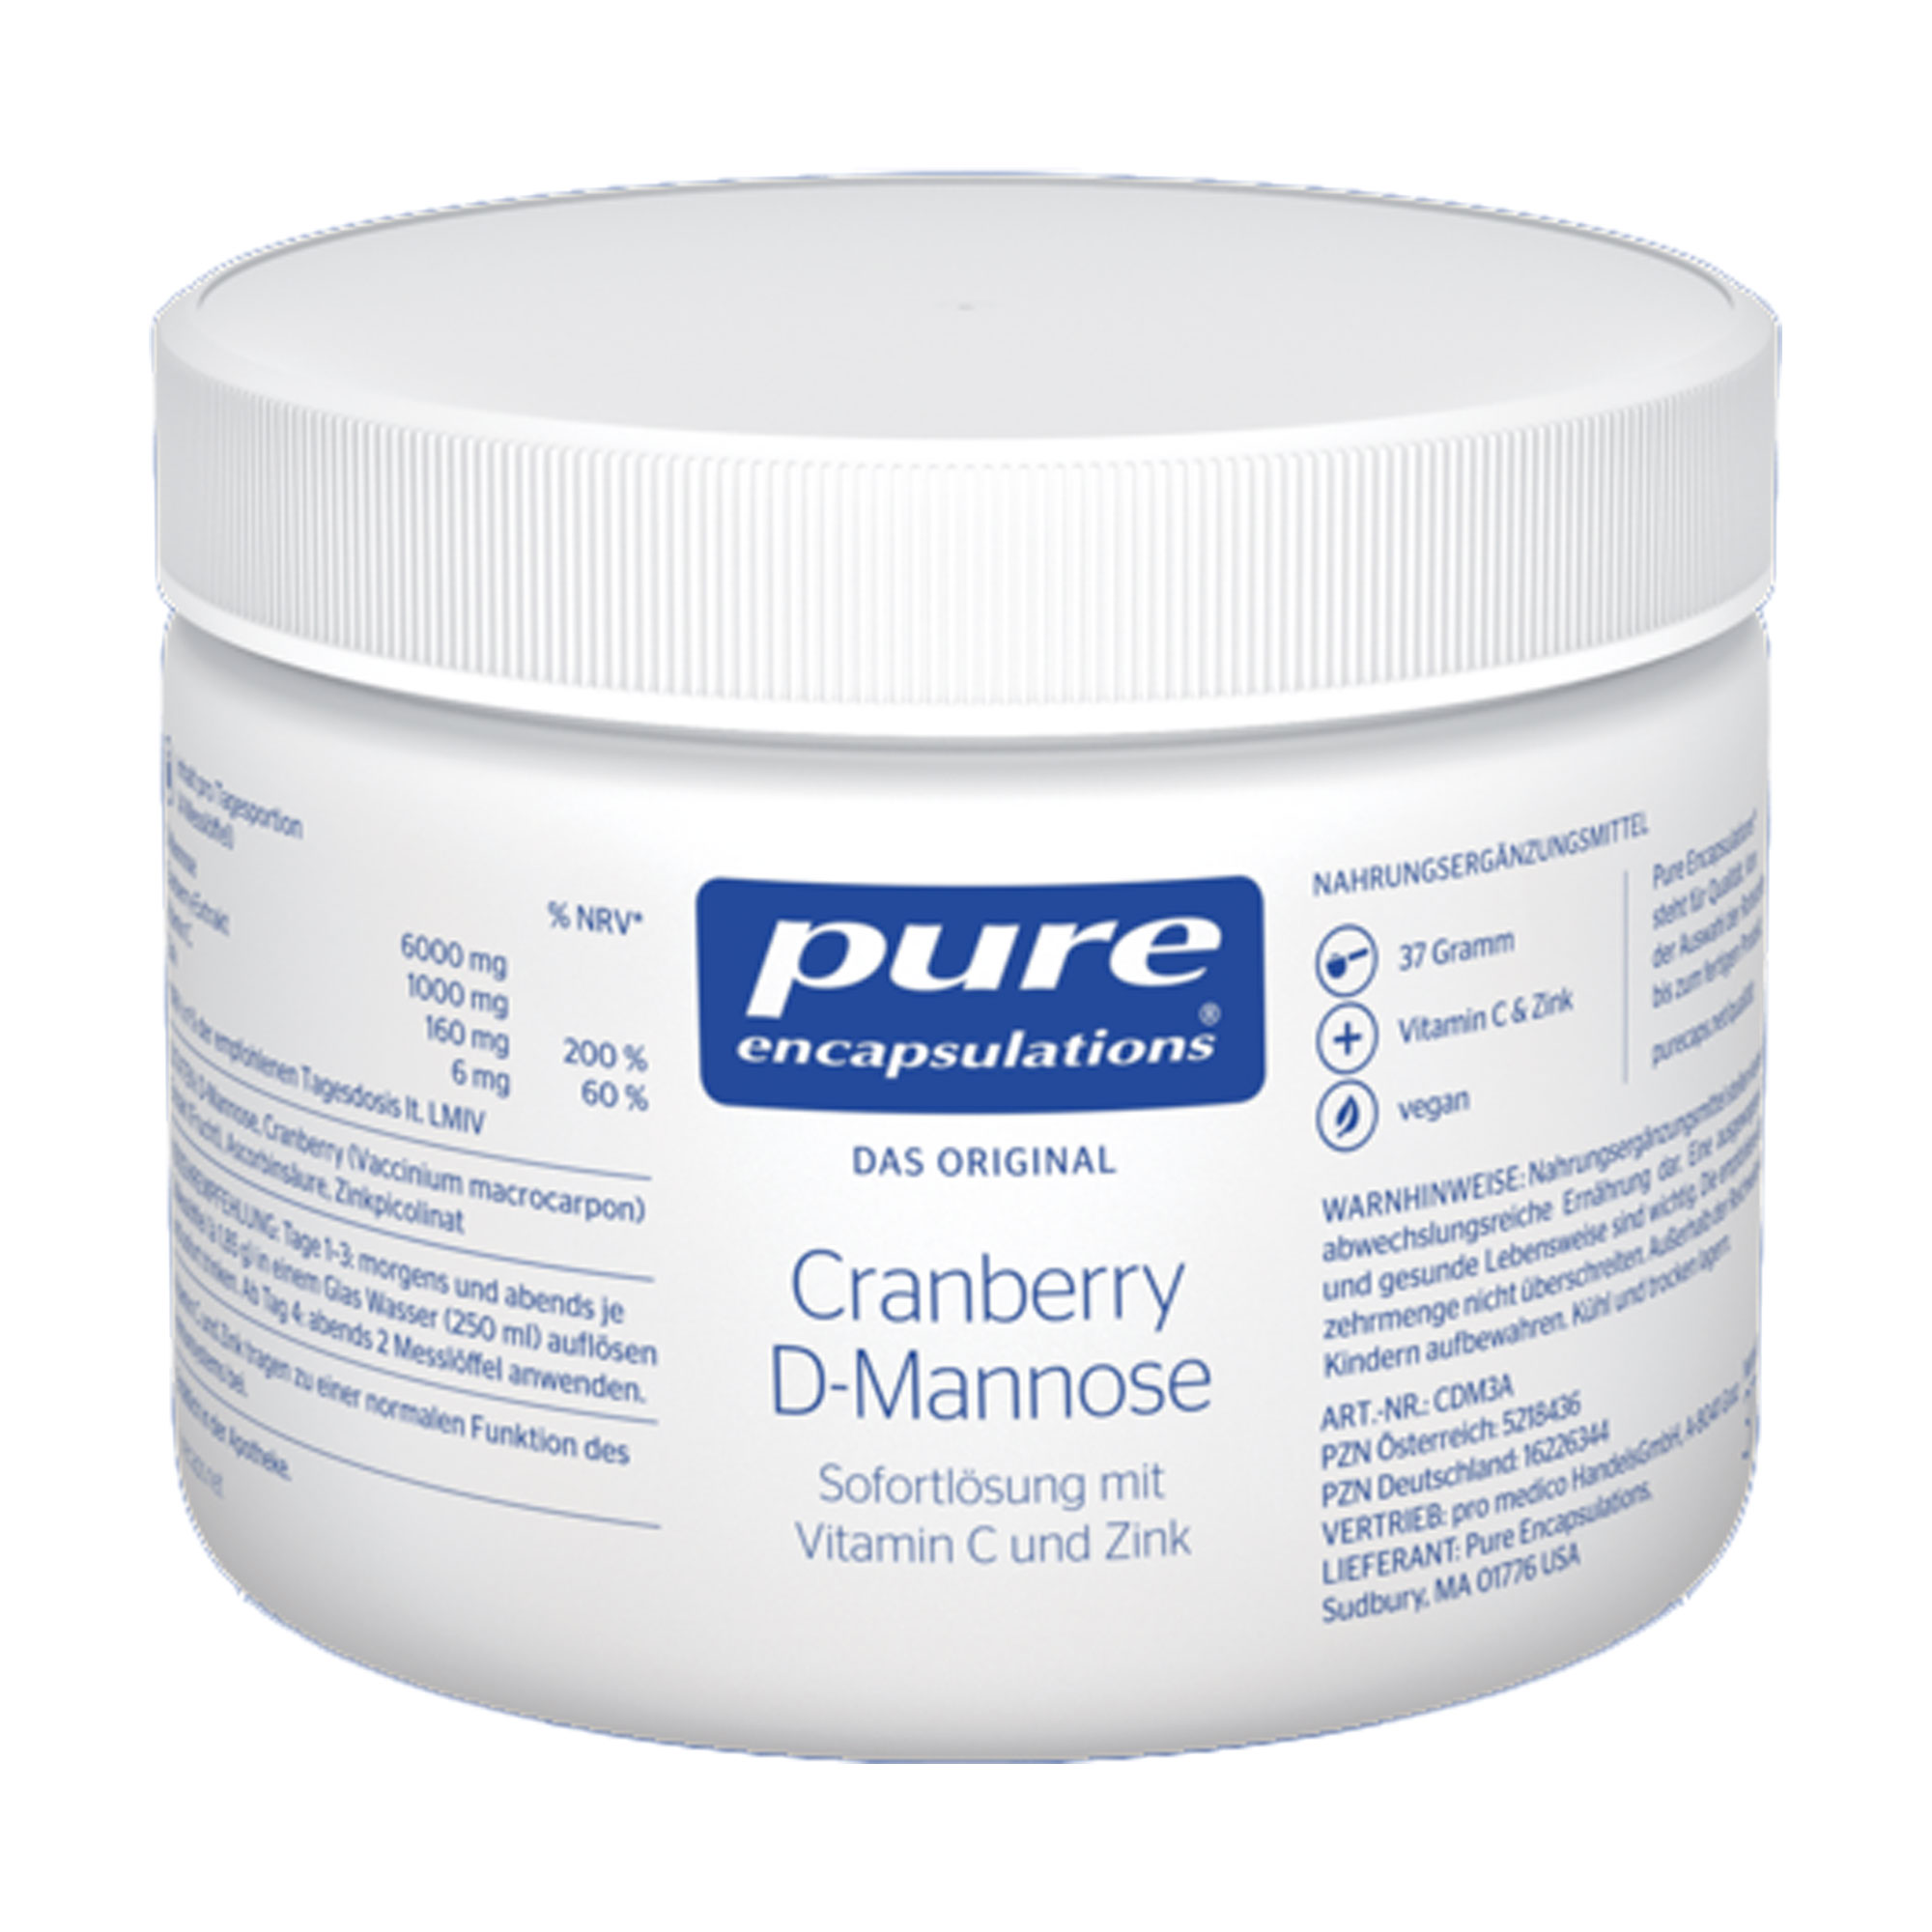 Nahrungsergänzungsmittel mit Cranberry-Extrakt, Vitamin C, Zink und D-Mannose.